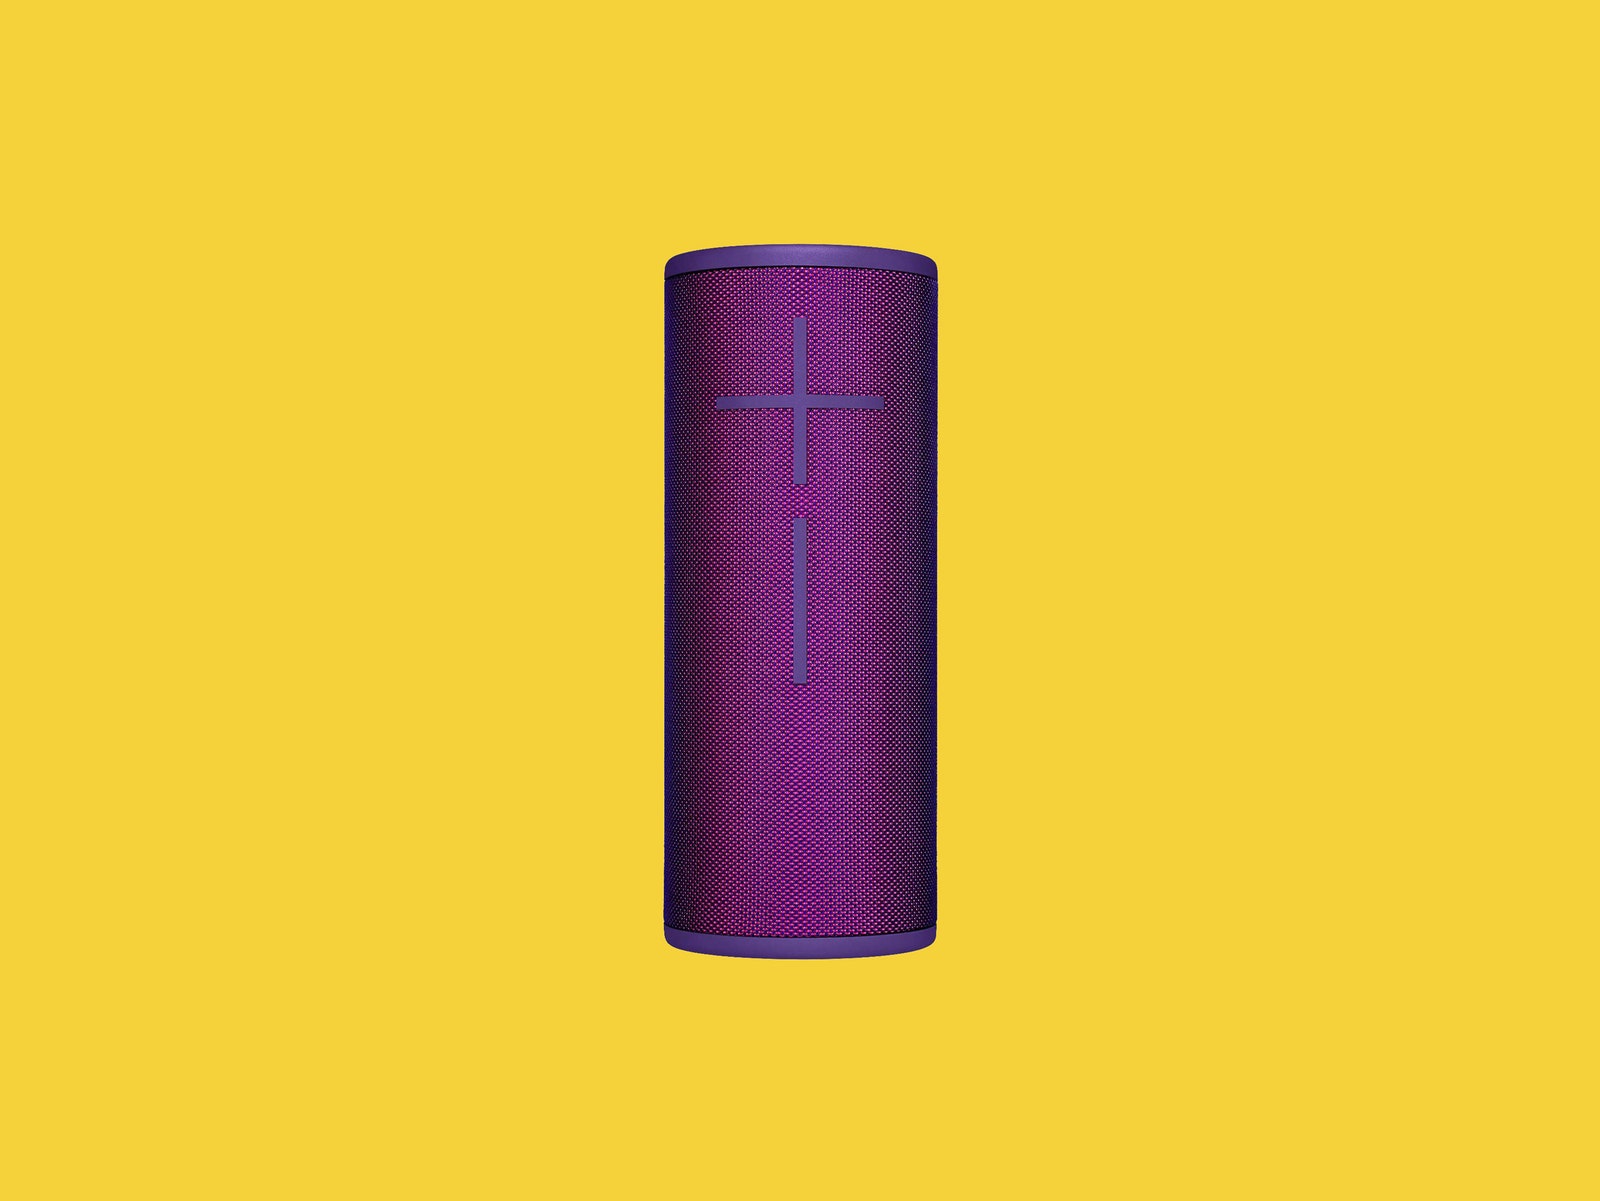 UE Boom speaker in purple